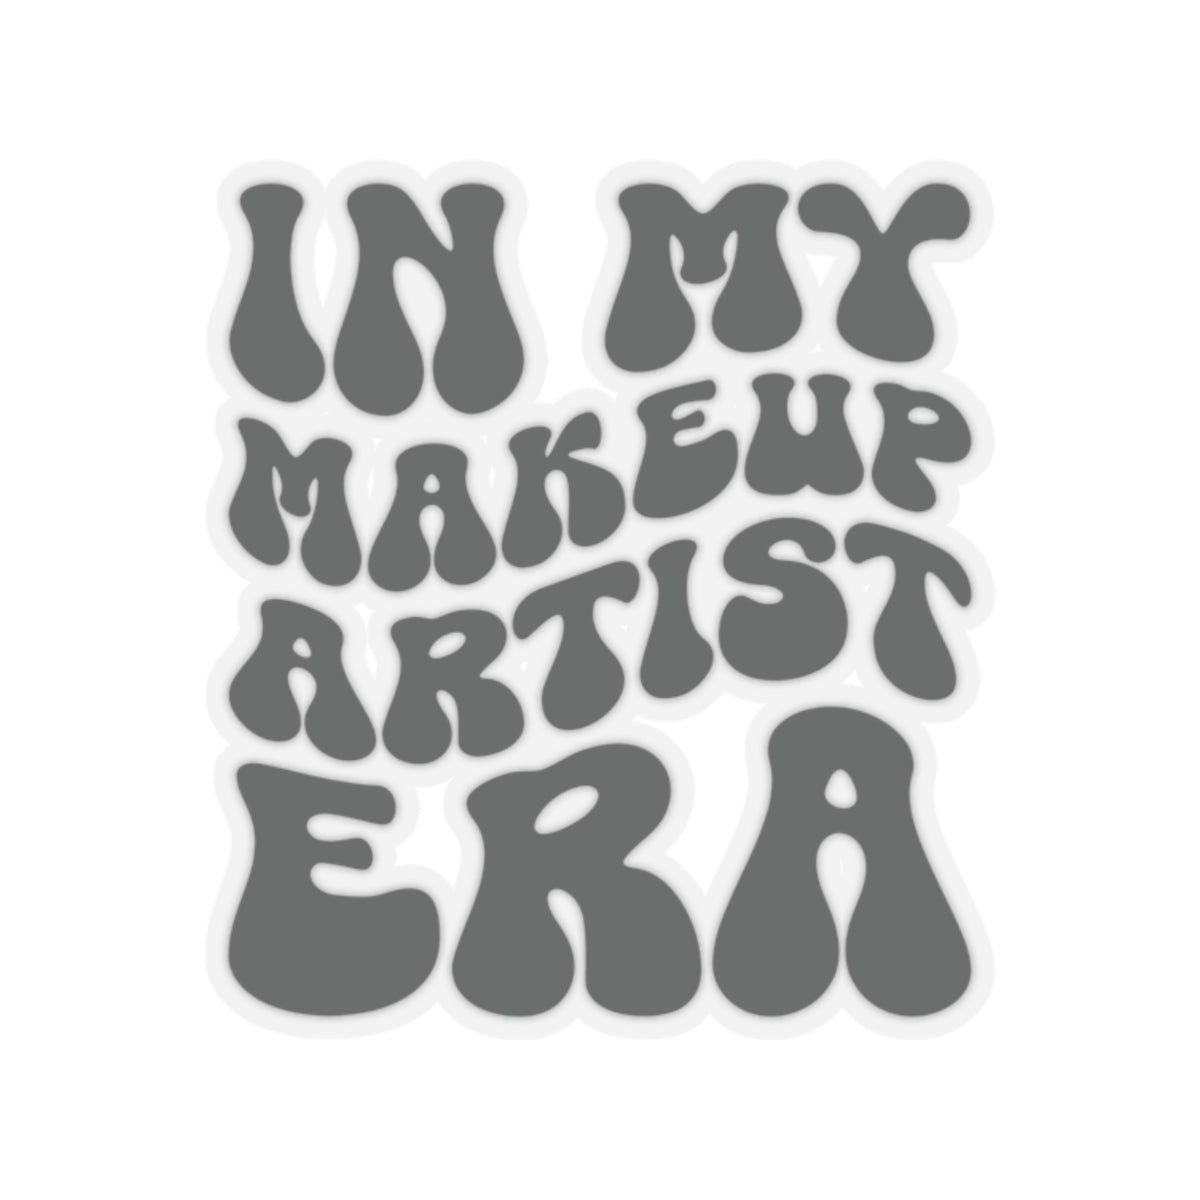 In My Makeup Artist Era Sticker